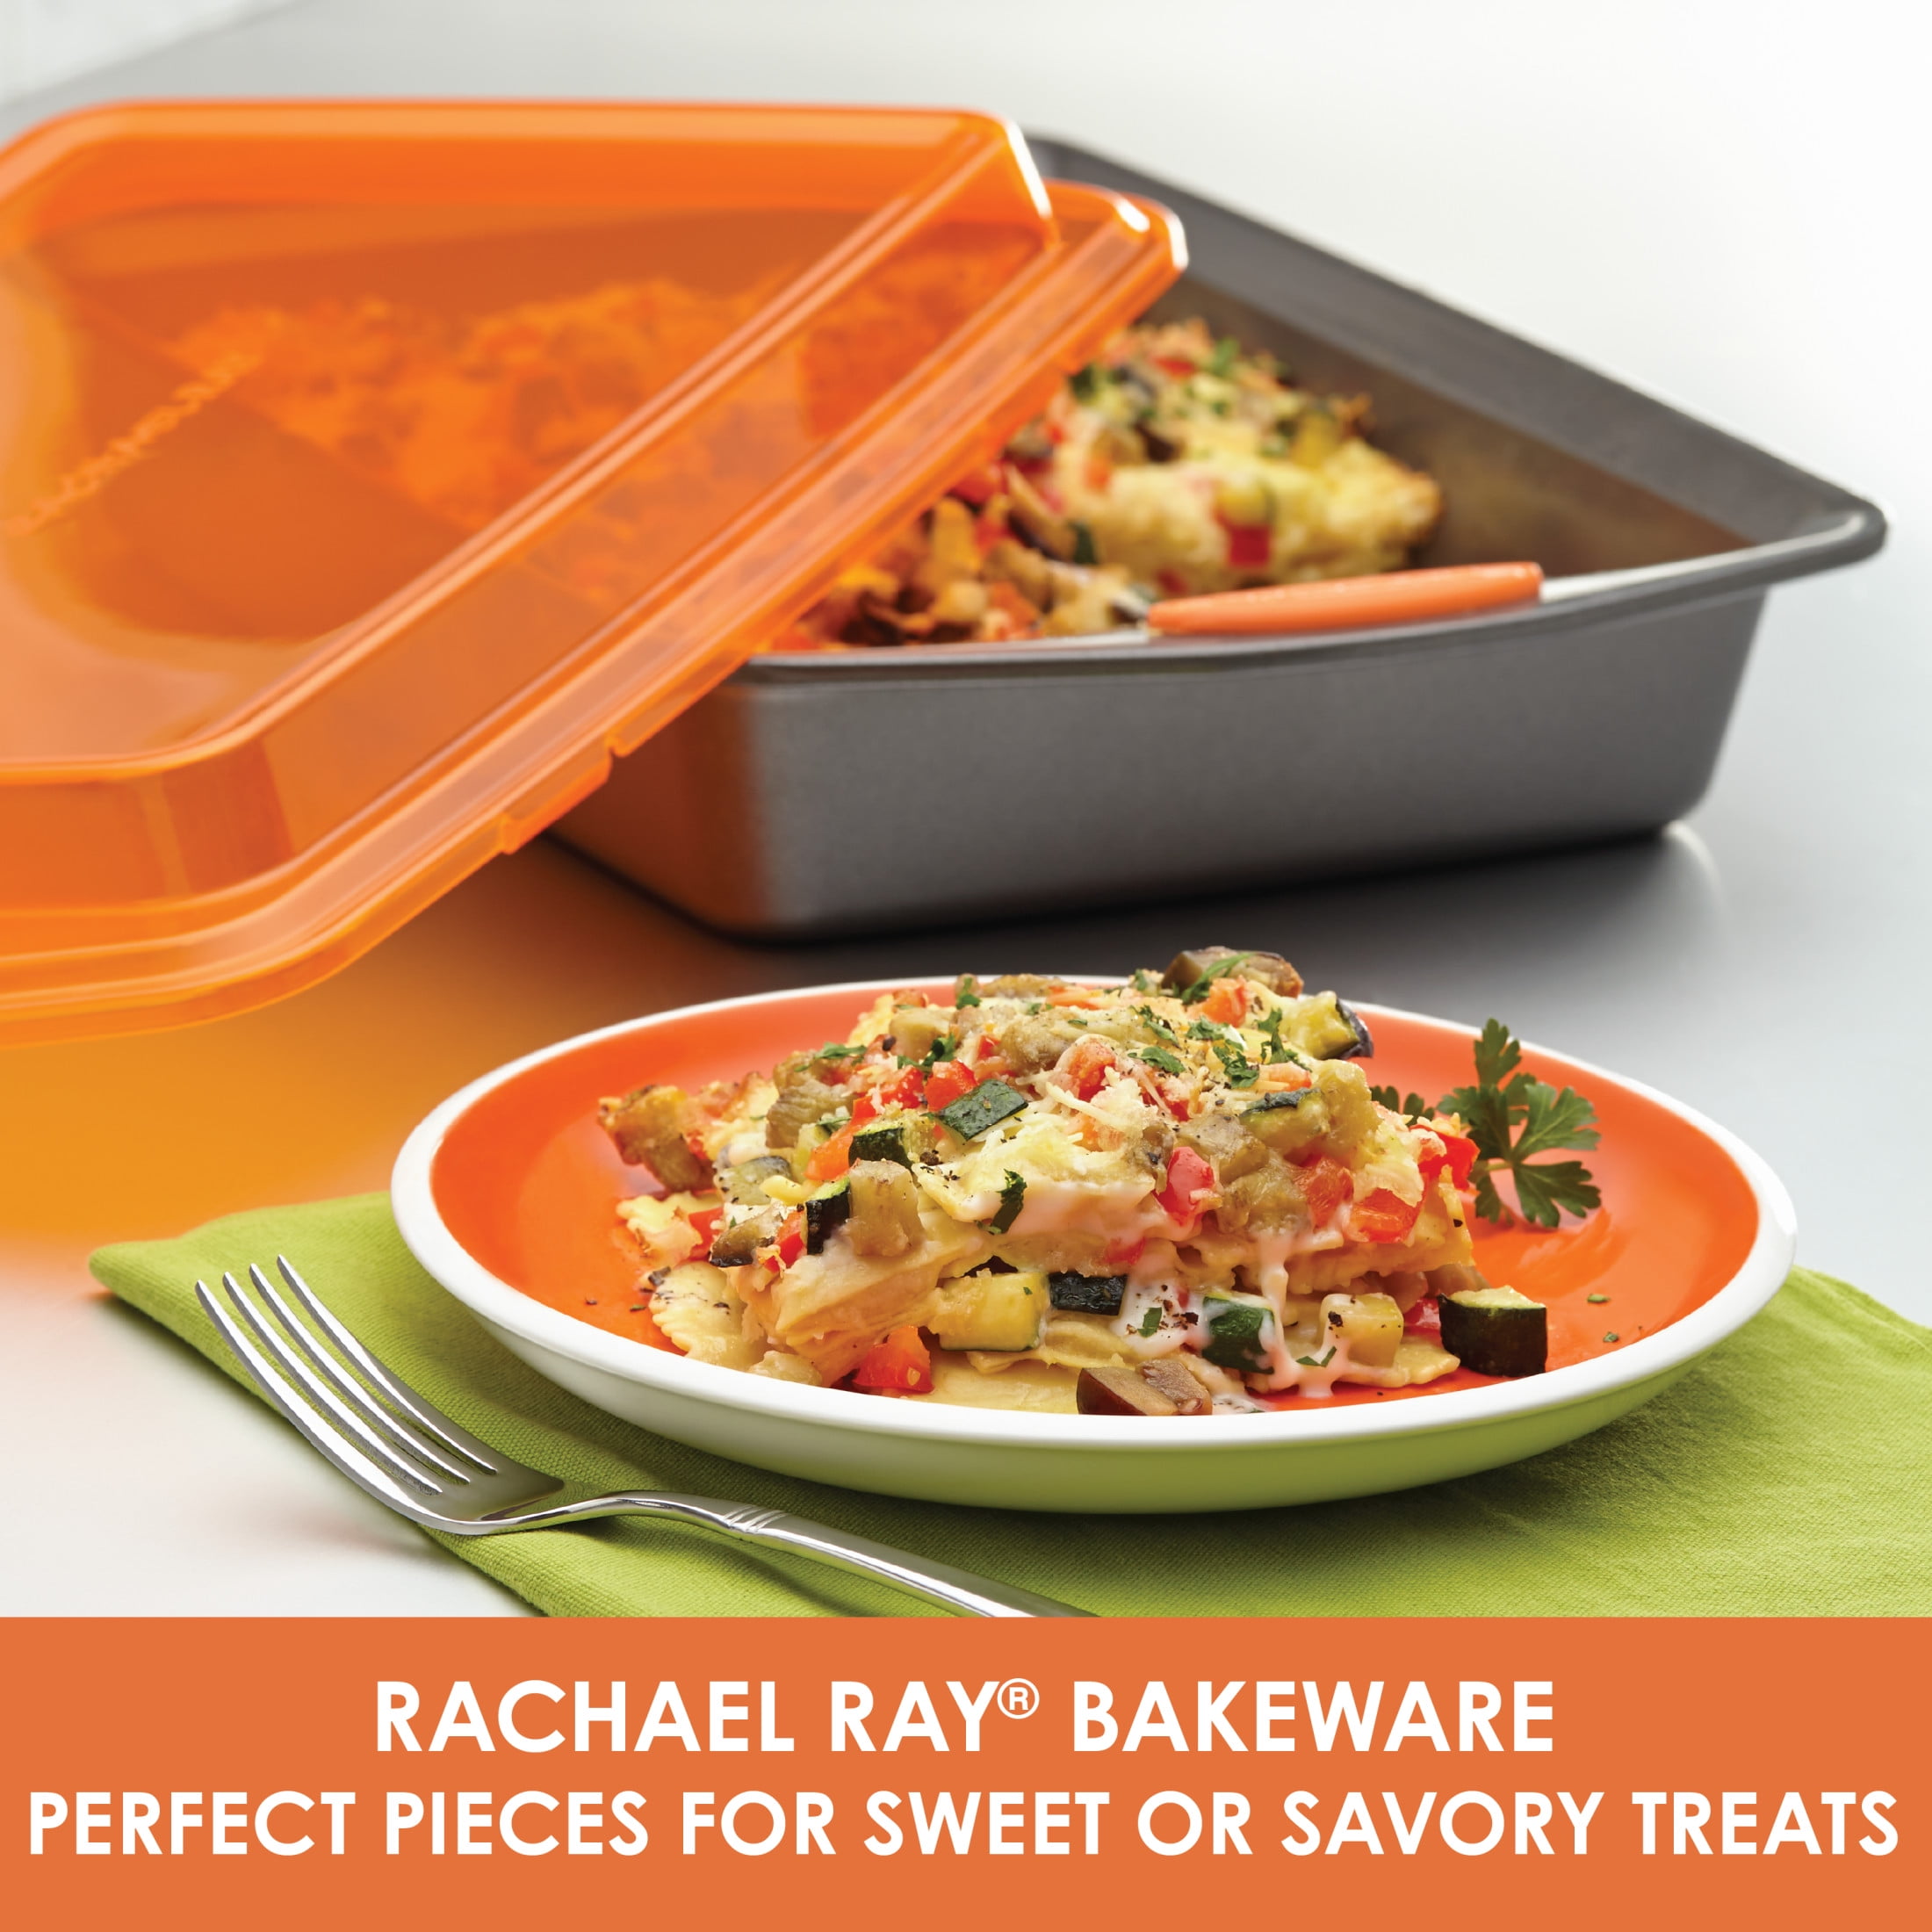 Rachael Ray Bakeware 9 X 13 Cake Pan : Target